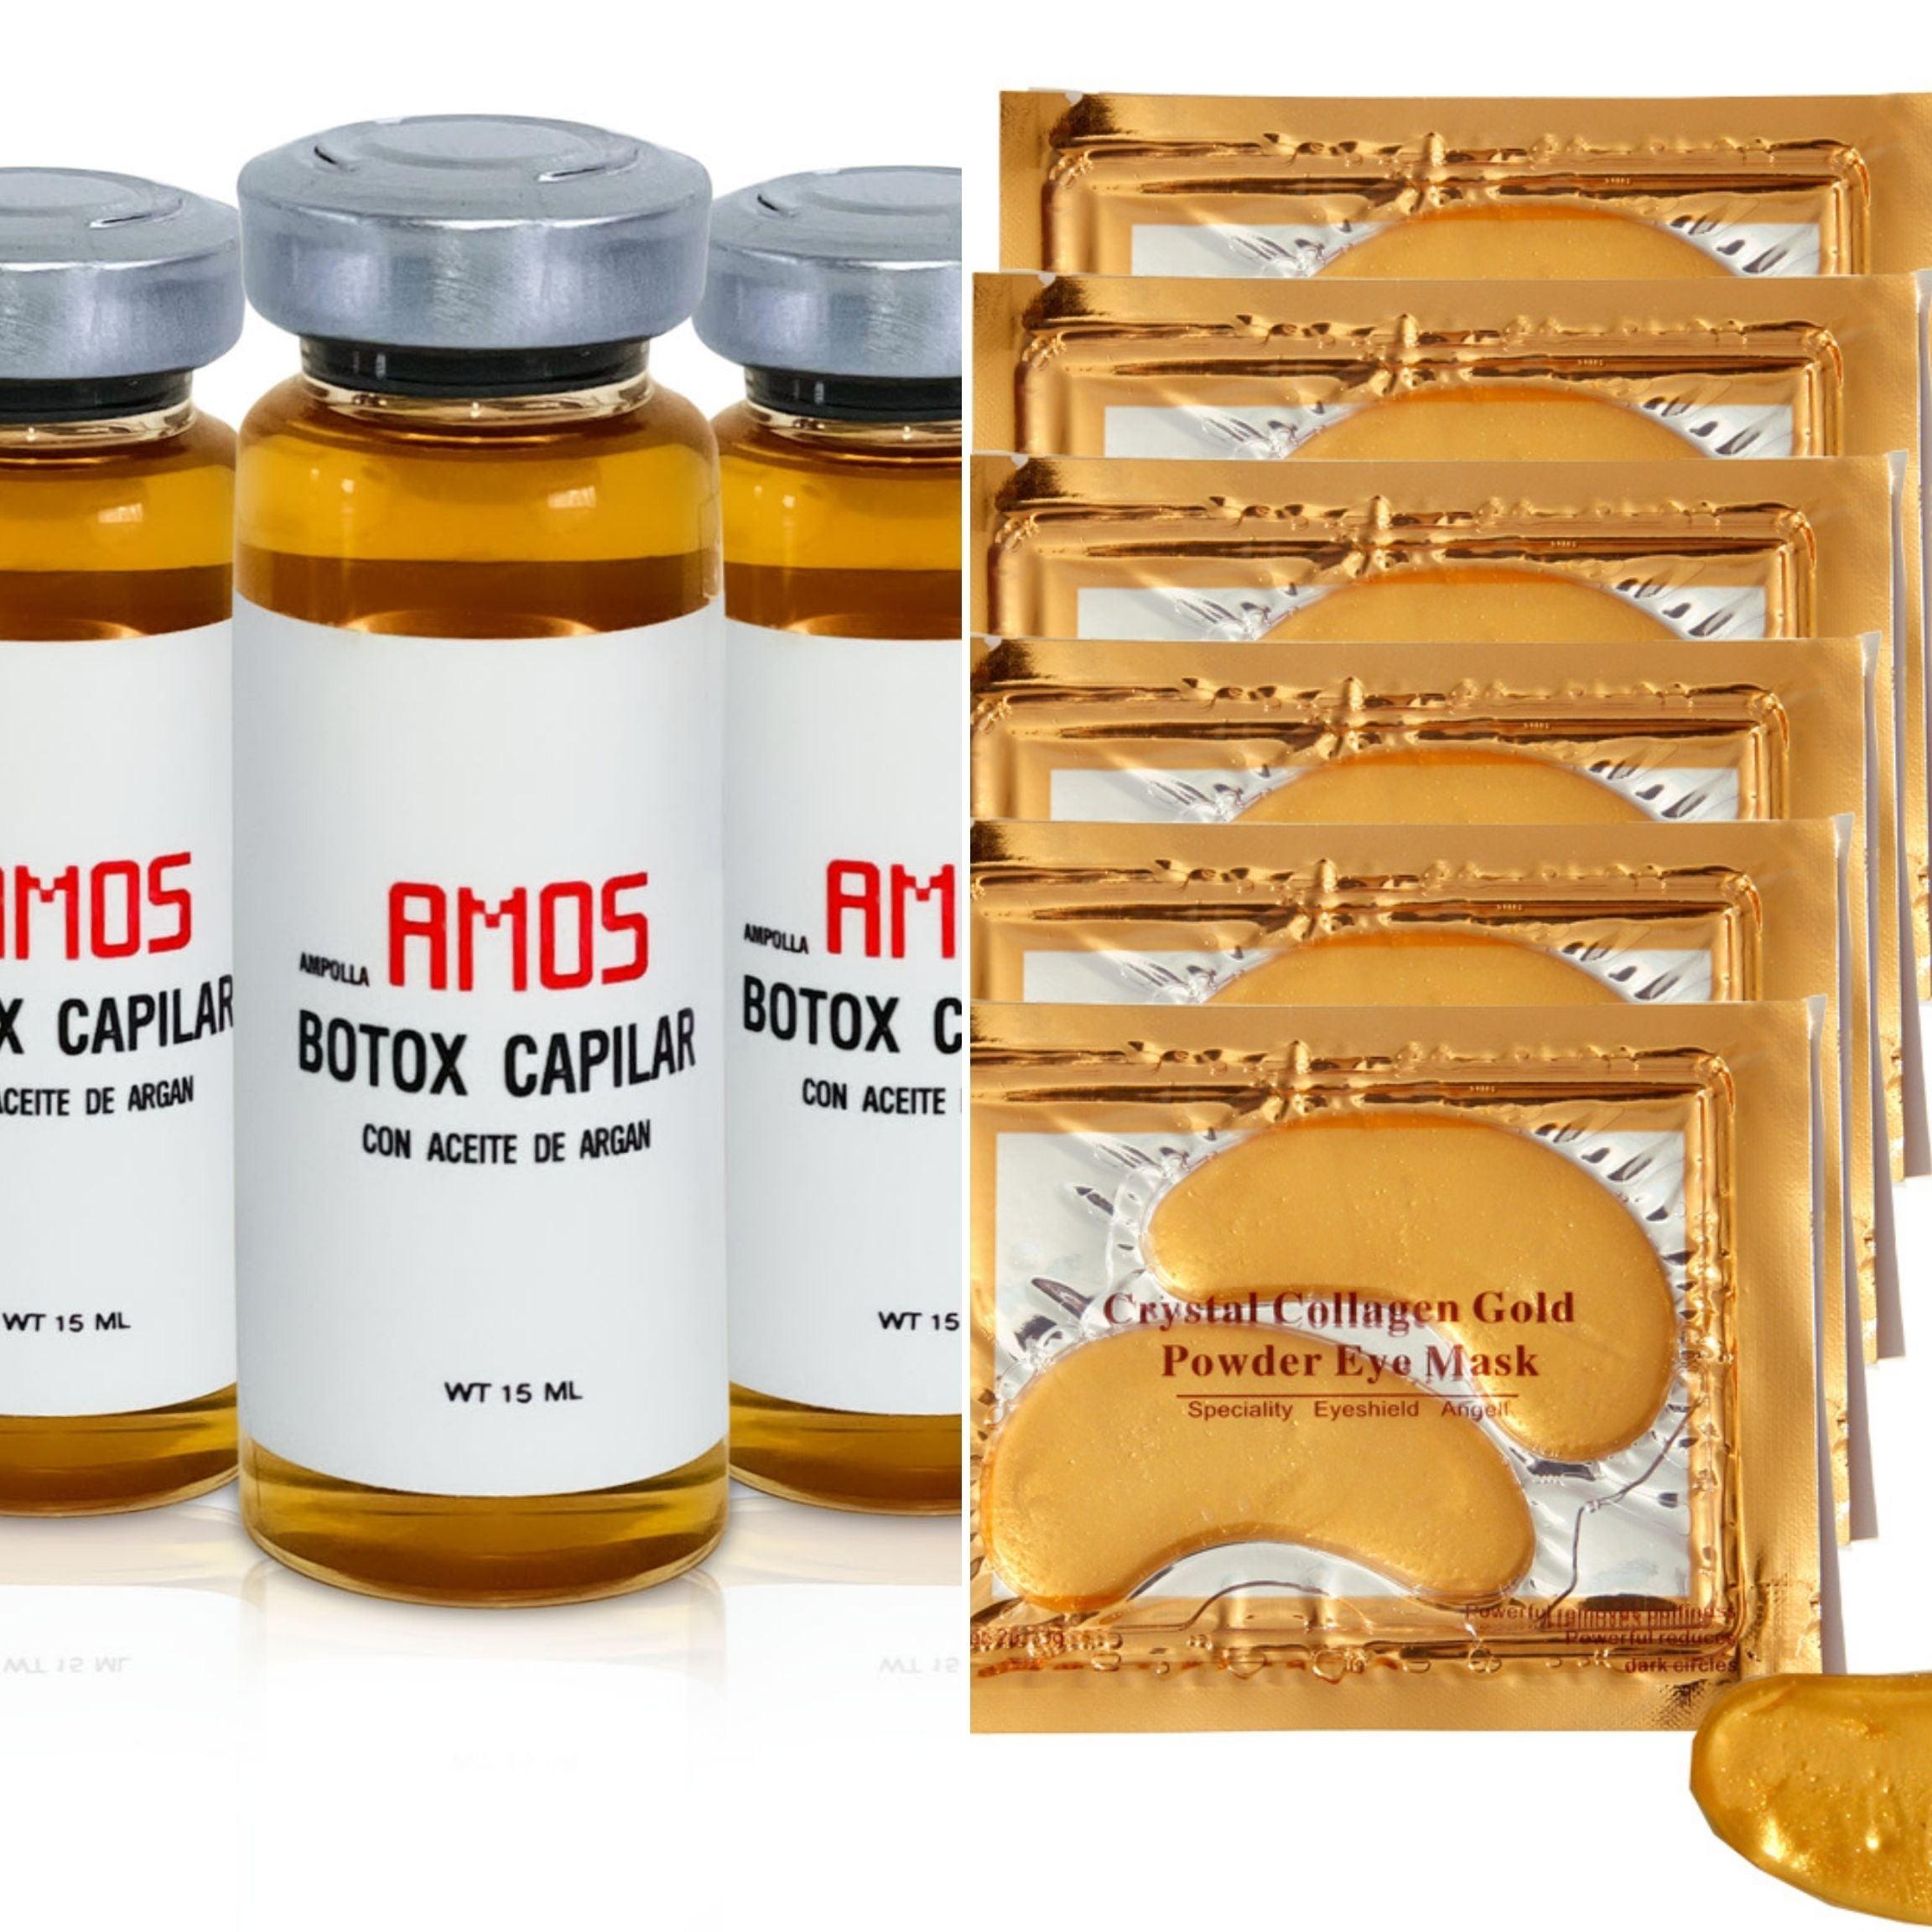 MOSTIMELINE Tratamiento Botox Capilar En Ampollas 3 Unidades De 15ml+Oro 24K Mascarillas Para Ojeras Y Bolsas (6 Pares) - AMOSTIMELINE